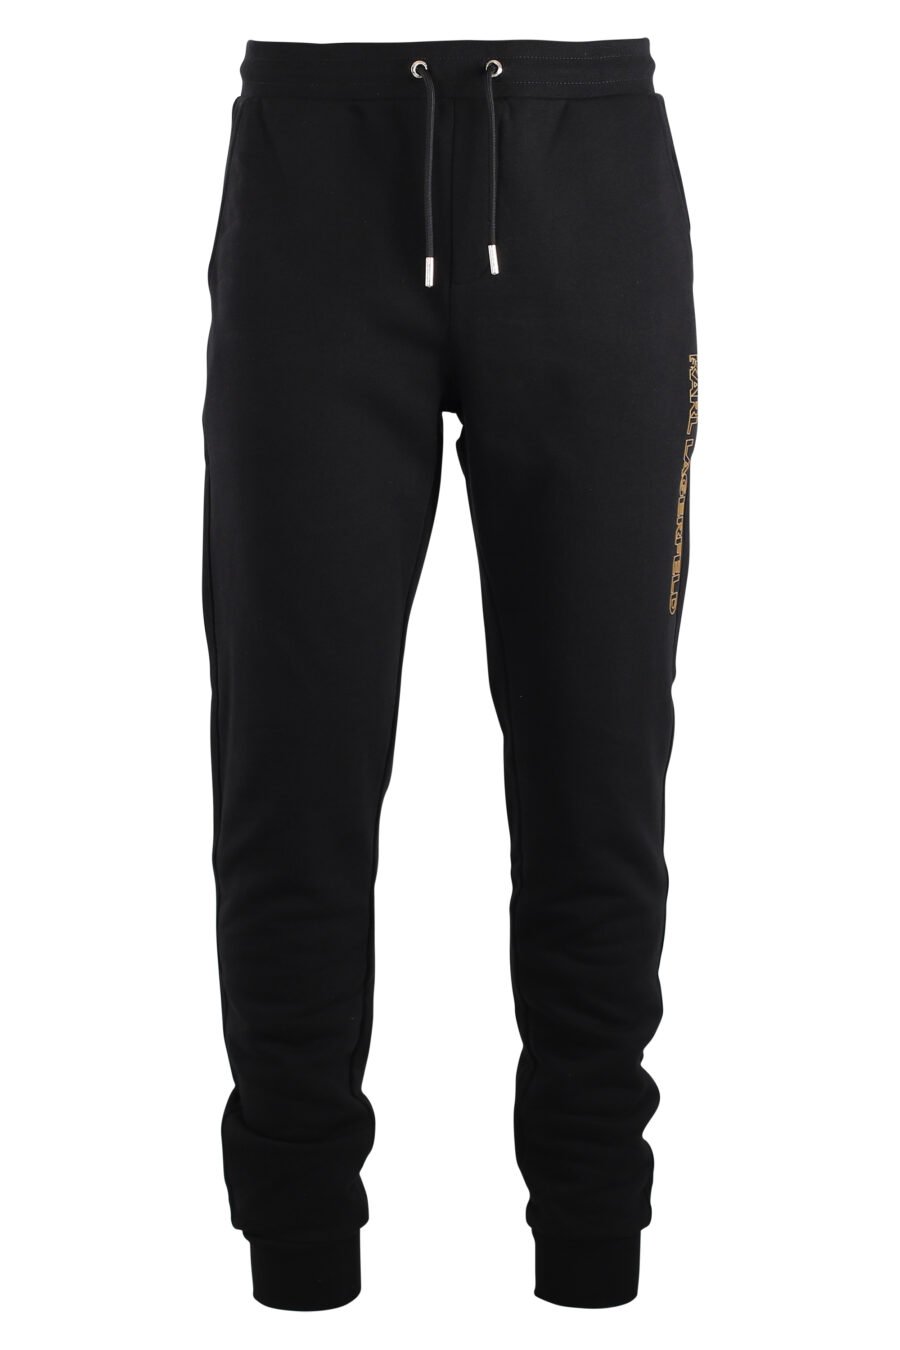 Pantalón de chandal negro con logo vertical dorado - IMG 7507